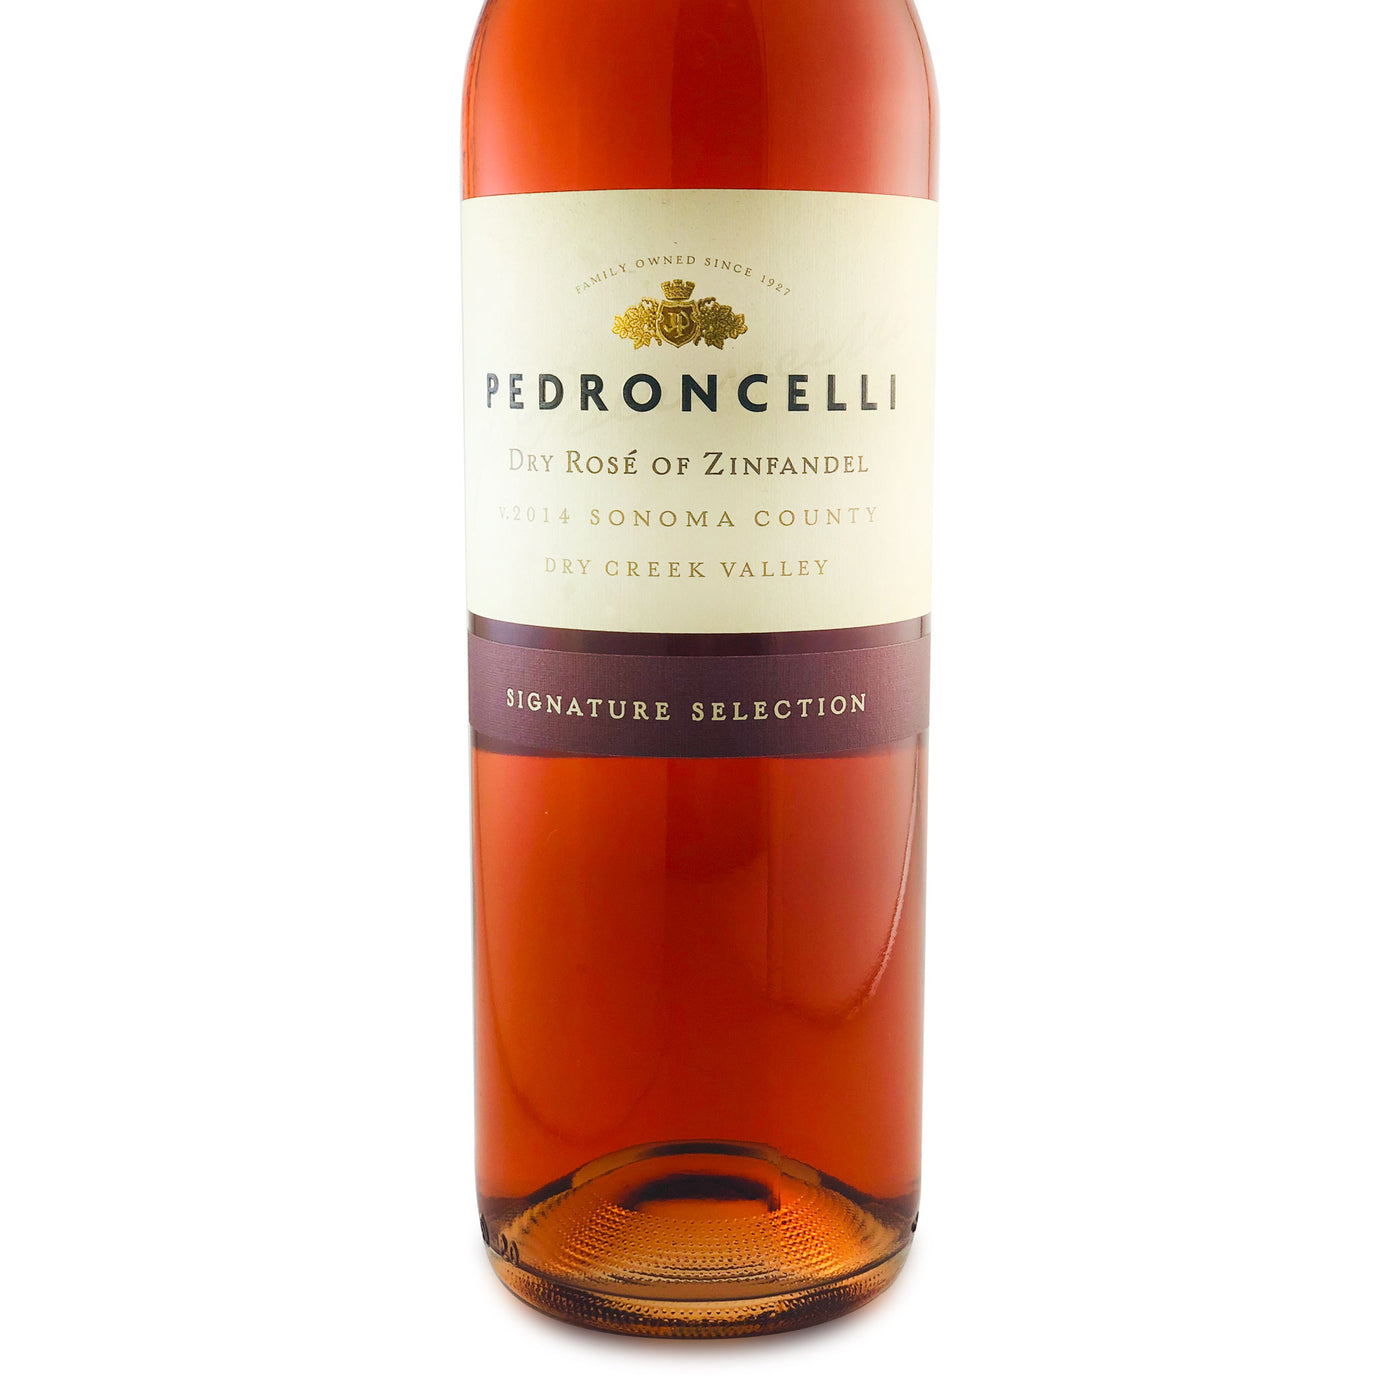 Pedroncelli 2014 Signature Selection Dry Rosé of Zinfandel